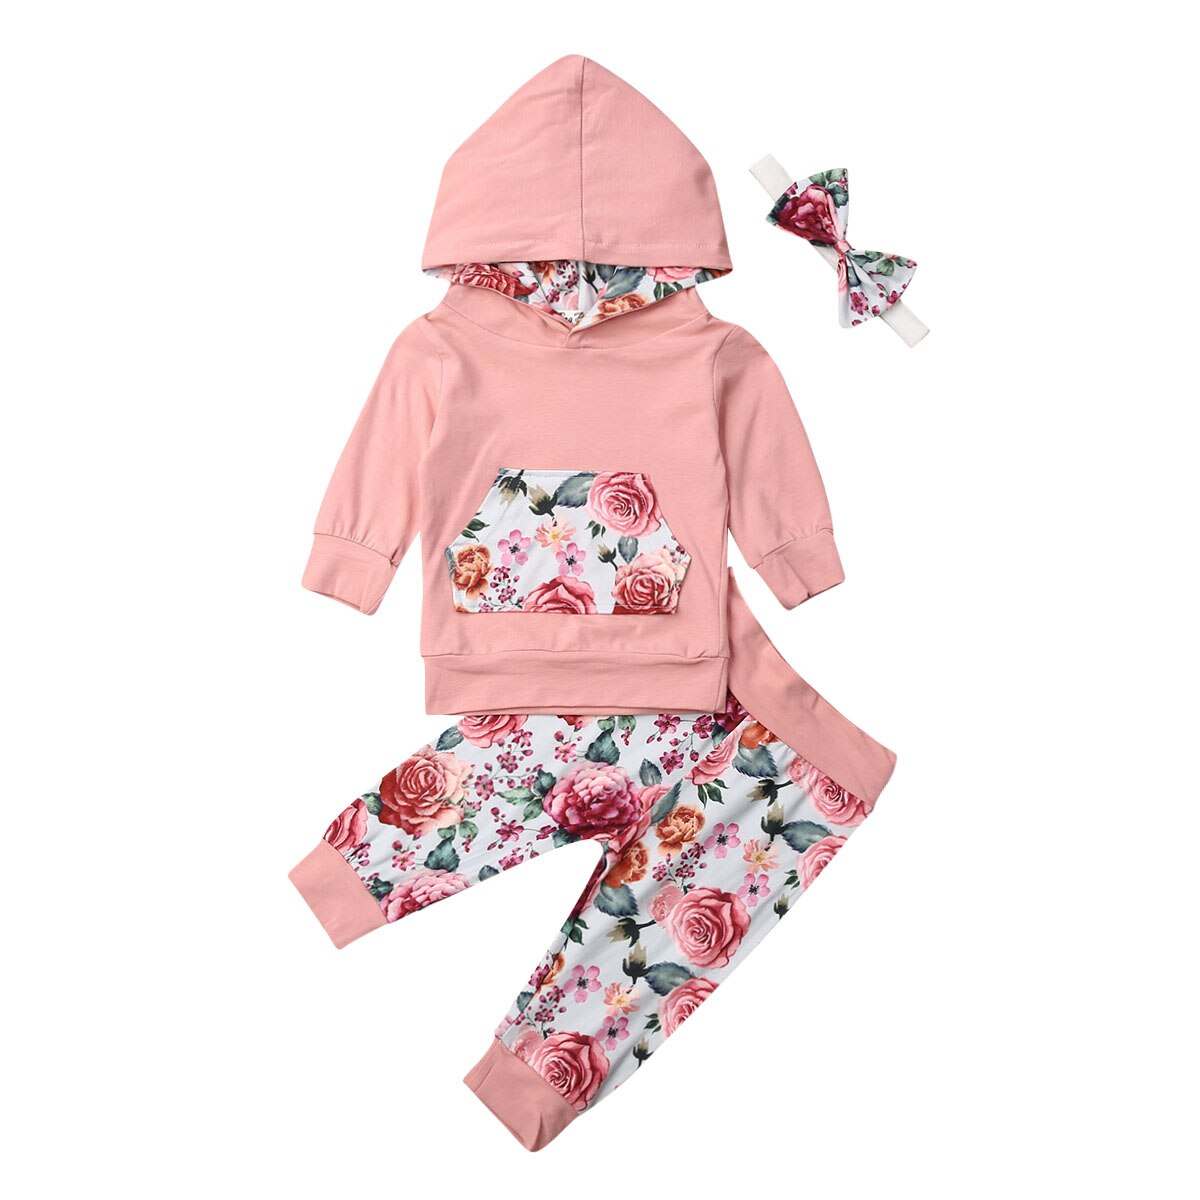 Småbørn baby pige outfits hættetrøjer blomsterbukser 3 stk tøj sæt træningsdragt